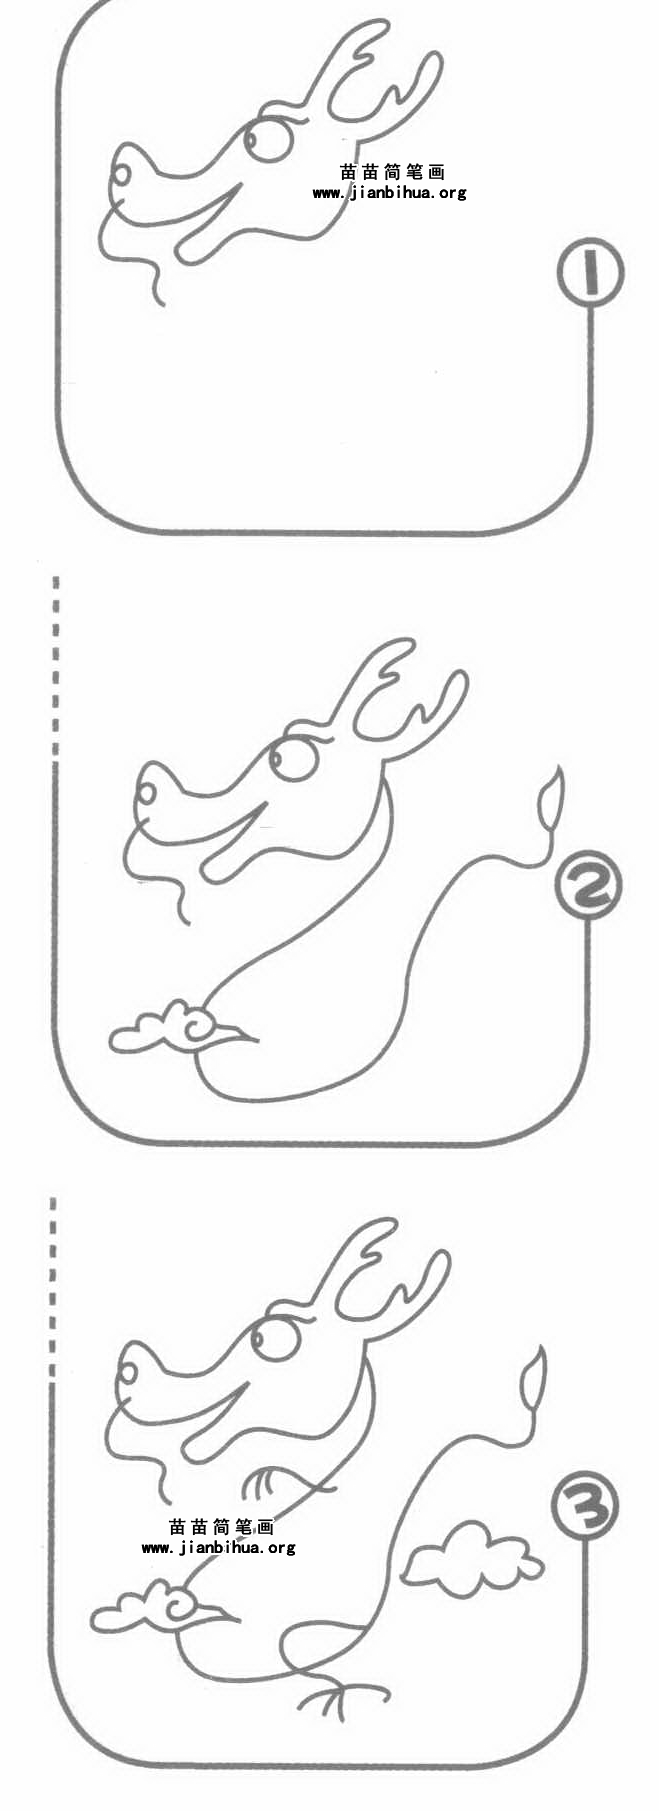 龙的简易画法 简笔画图片